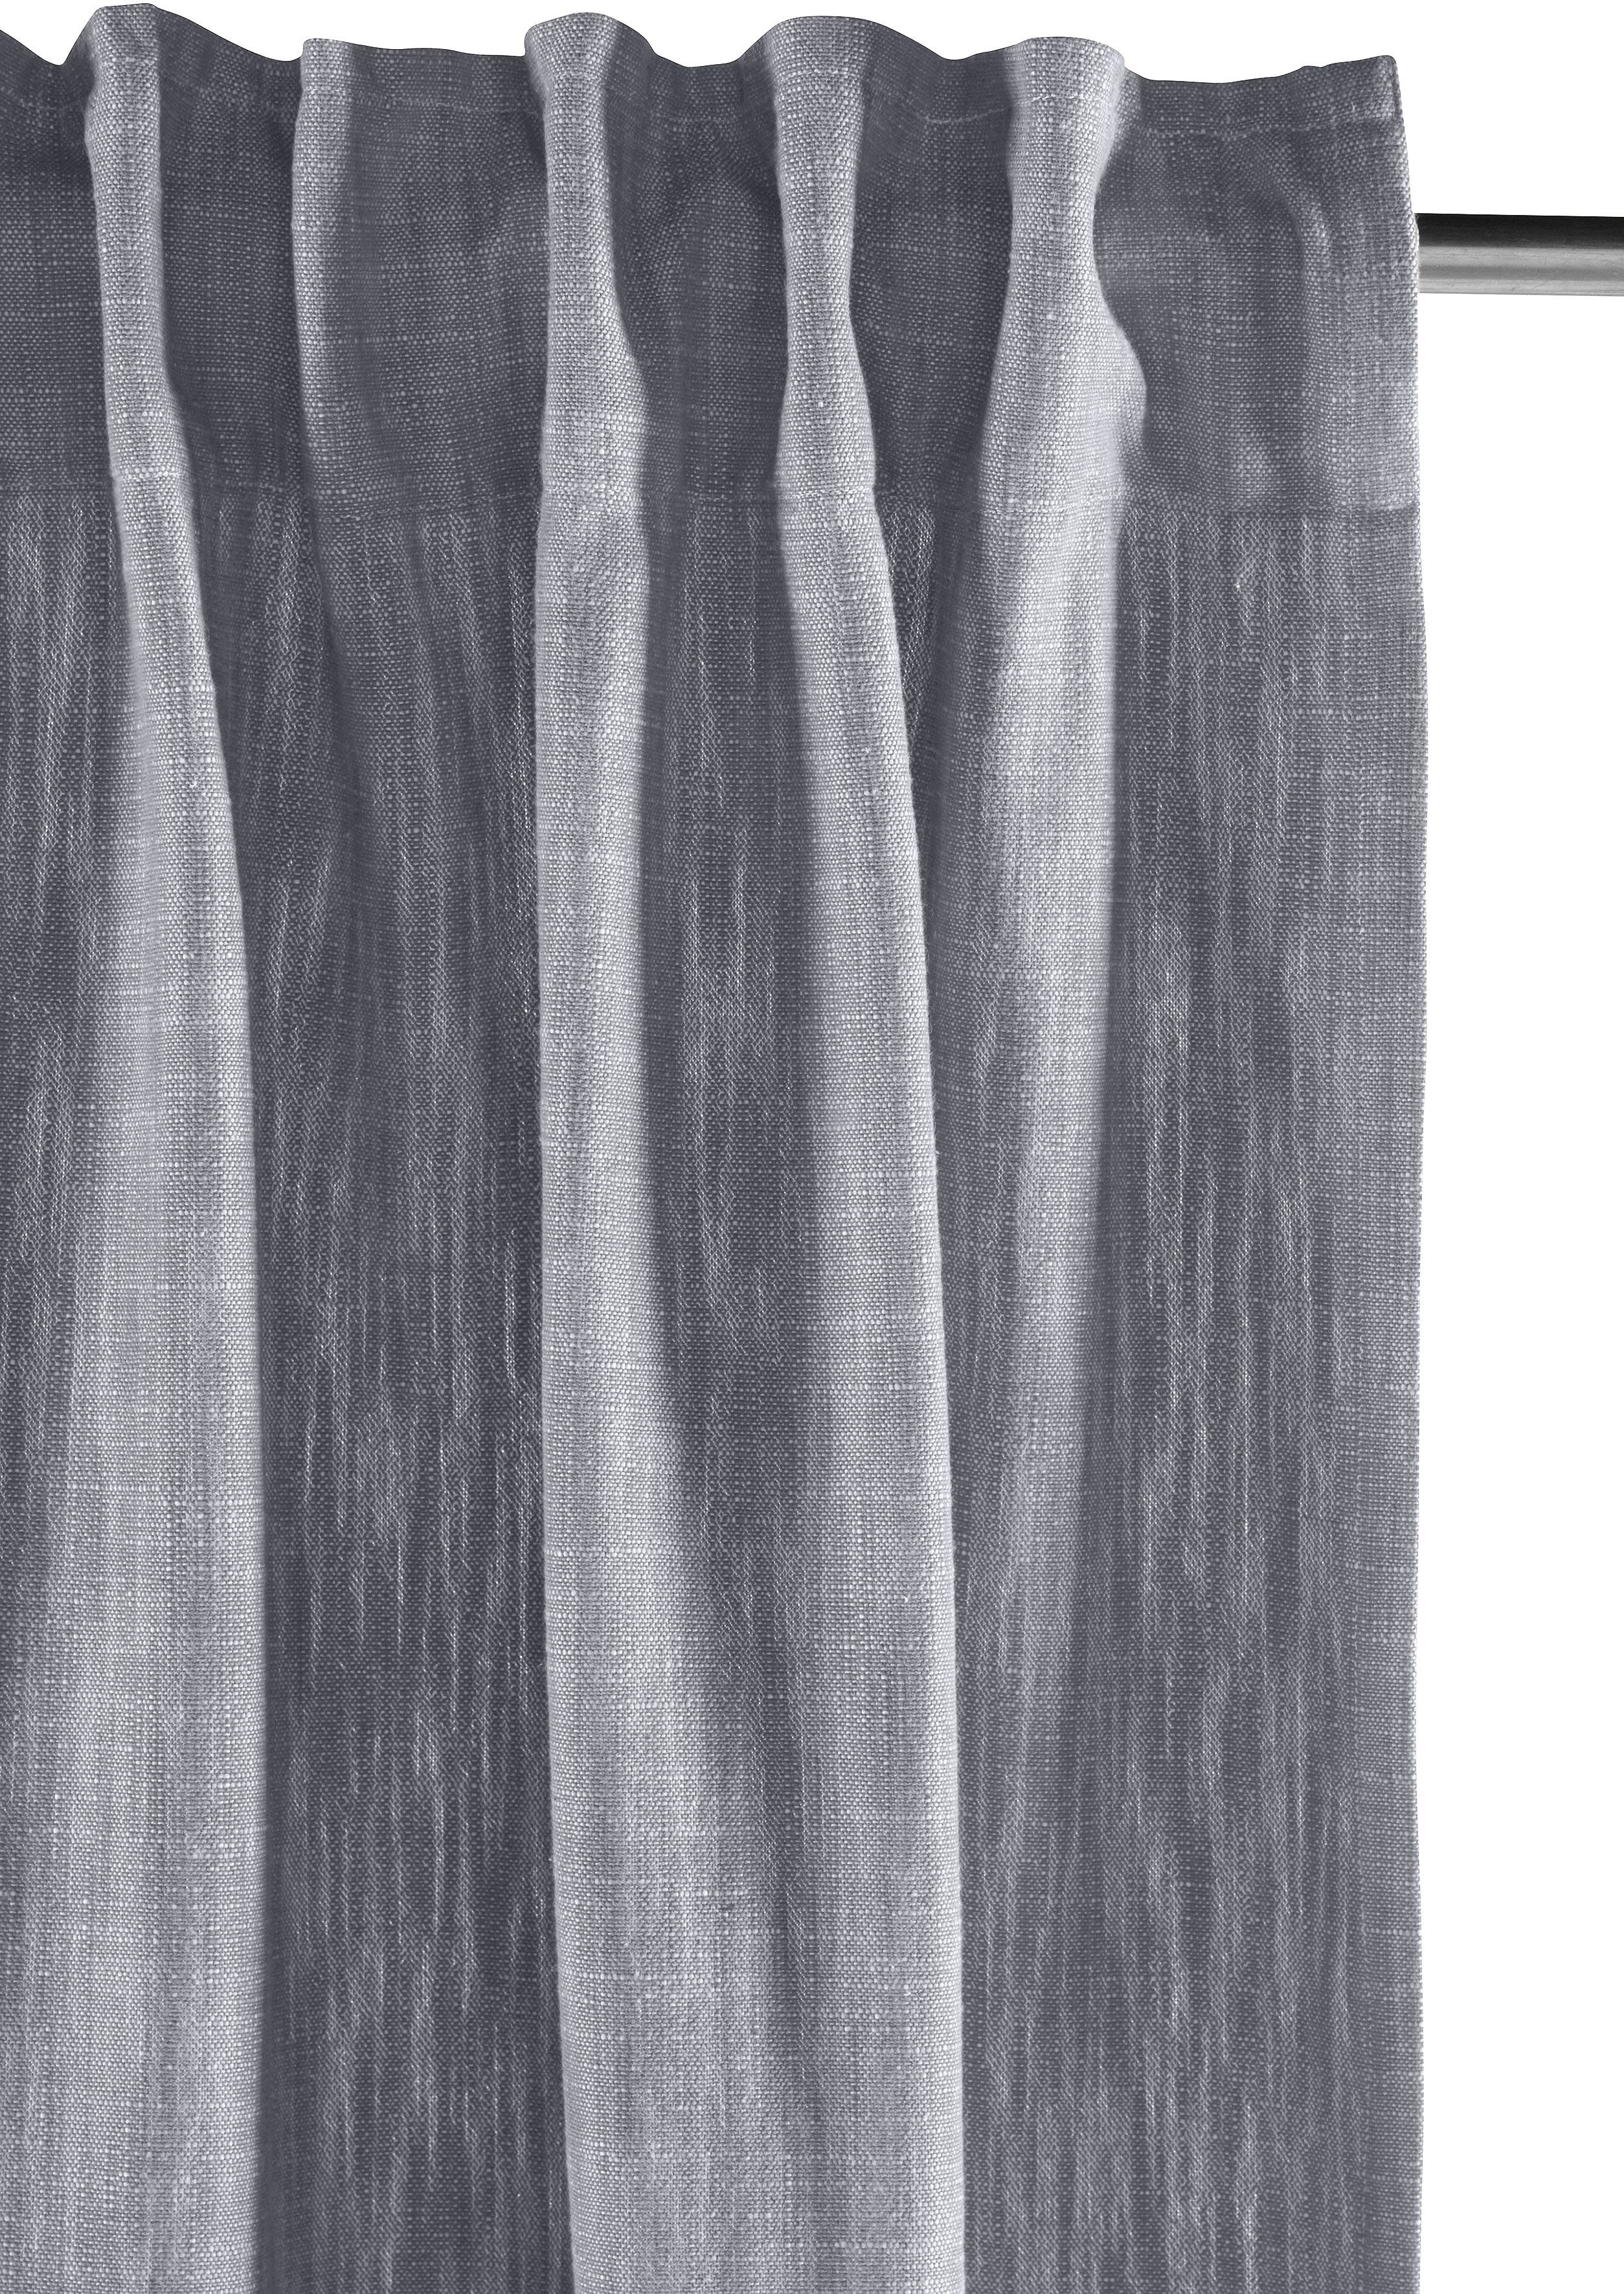 St), Multifunktionsband Vorhang (1 grau elbgestoeber, Elbgarn, blickdicht